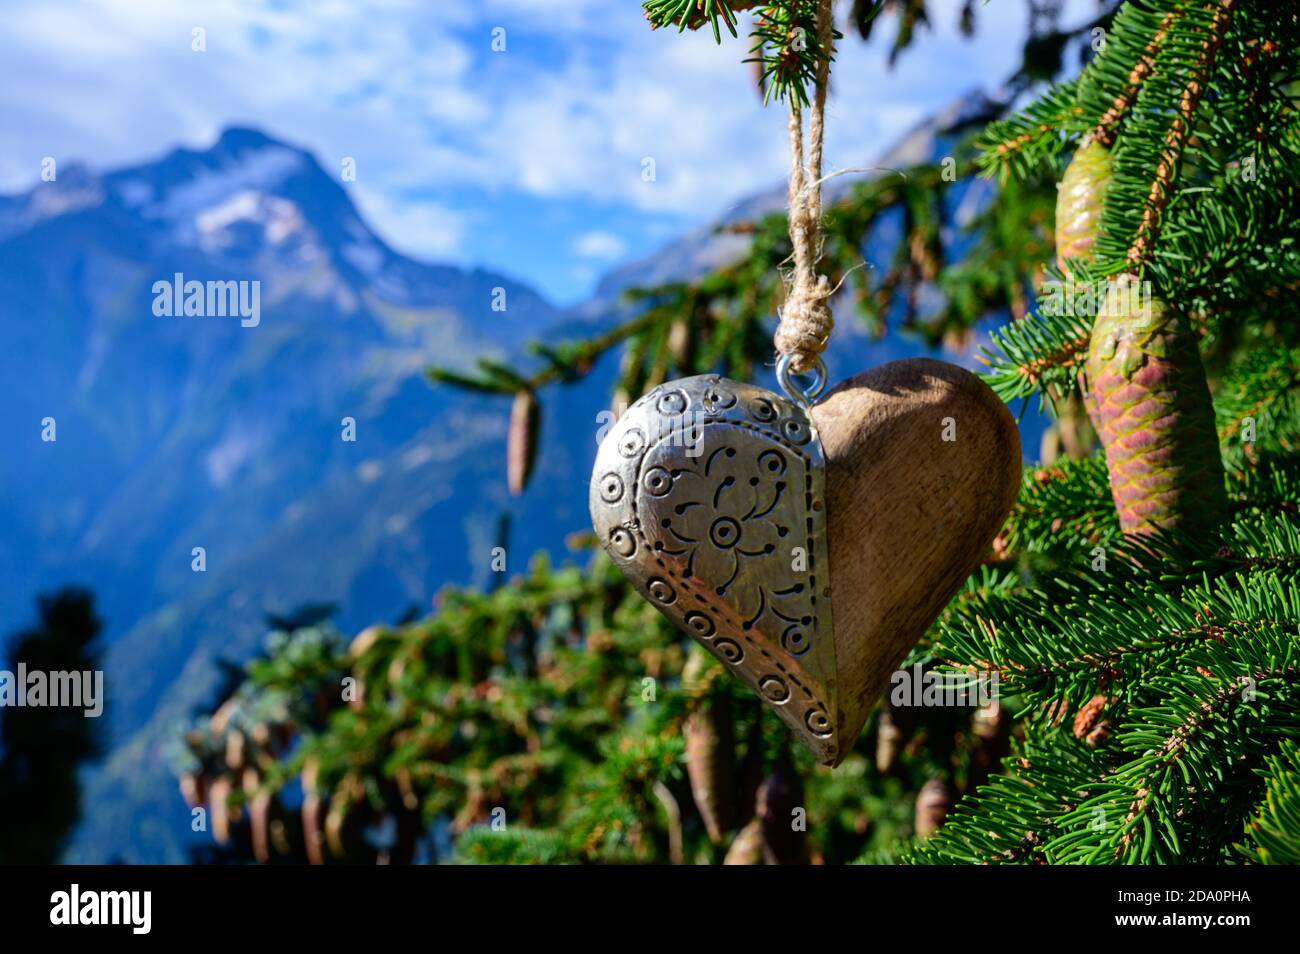 Grüner Weihnachtsbaum mit Zapfen, der in den französischen Alpen wächst  Dekoriert mit hängendem Holzherz und Berggipfeln im Hintergrund  Stockfotografie - Alamy